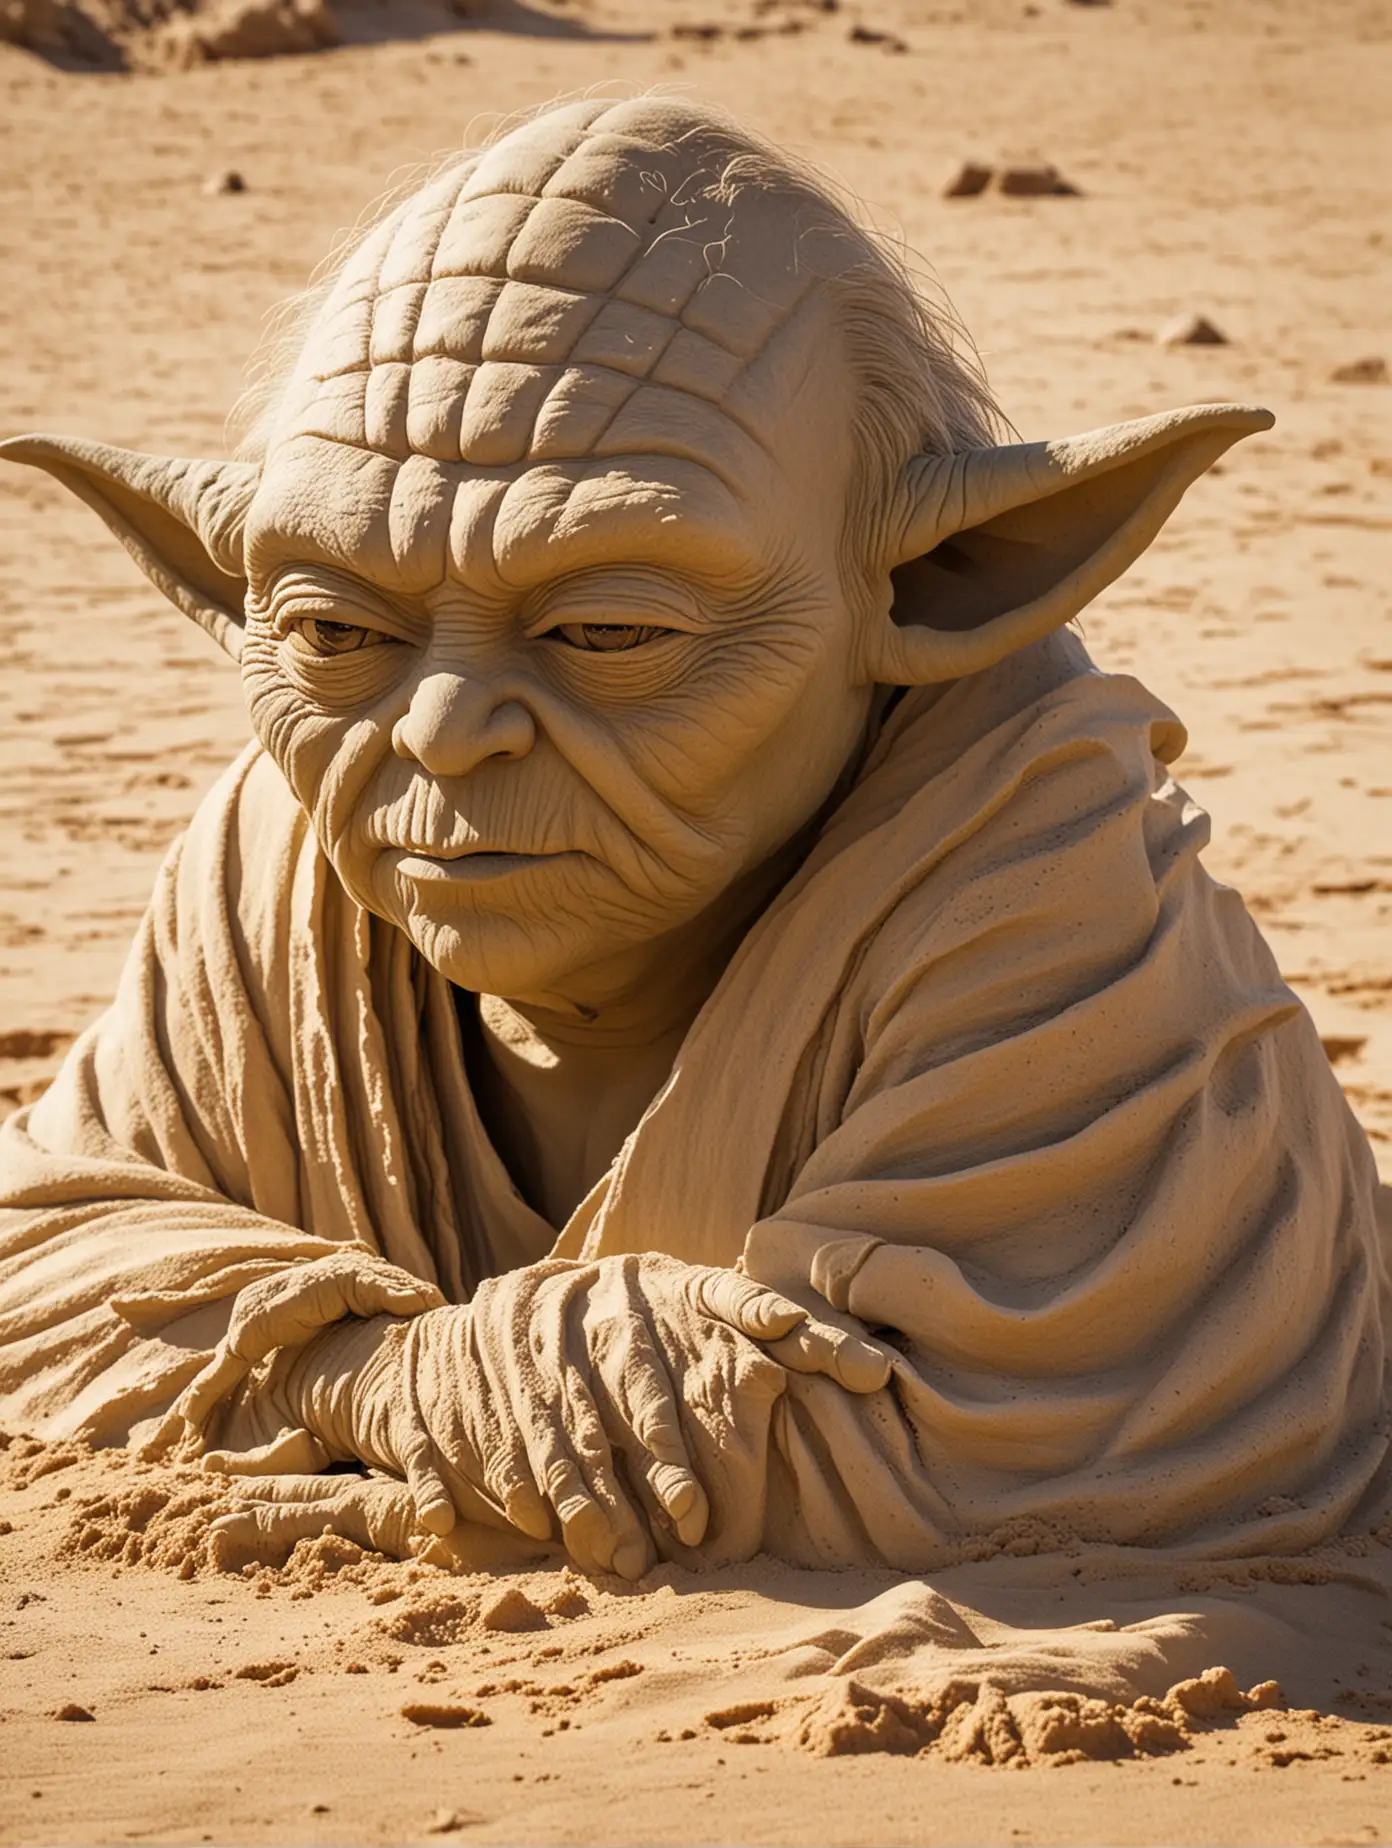 CloseUp Sand Sculpture of Master Yoda in Desert Sunlight